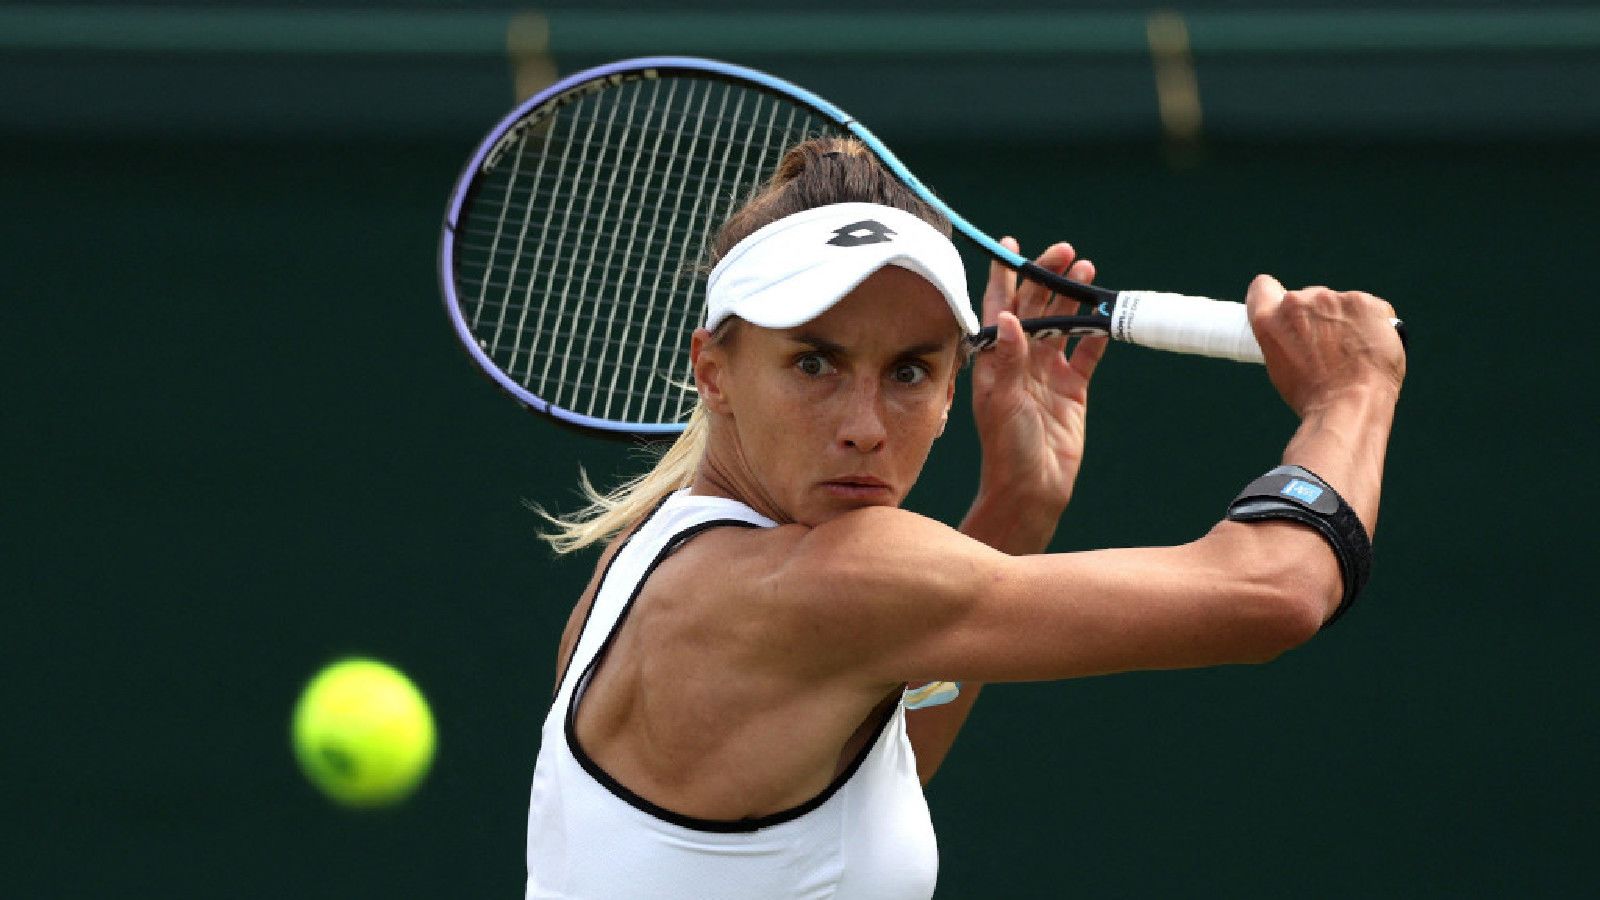 La WTA comentó sobre el ataque de pánico de la tenista ucraniana Lesia Tsurenko debido a la admisión de los rusos